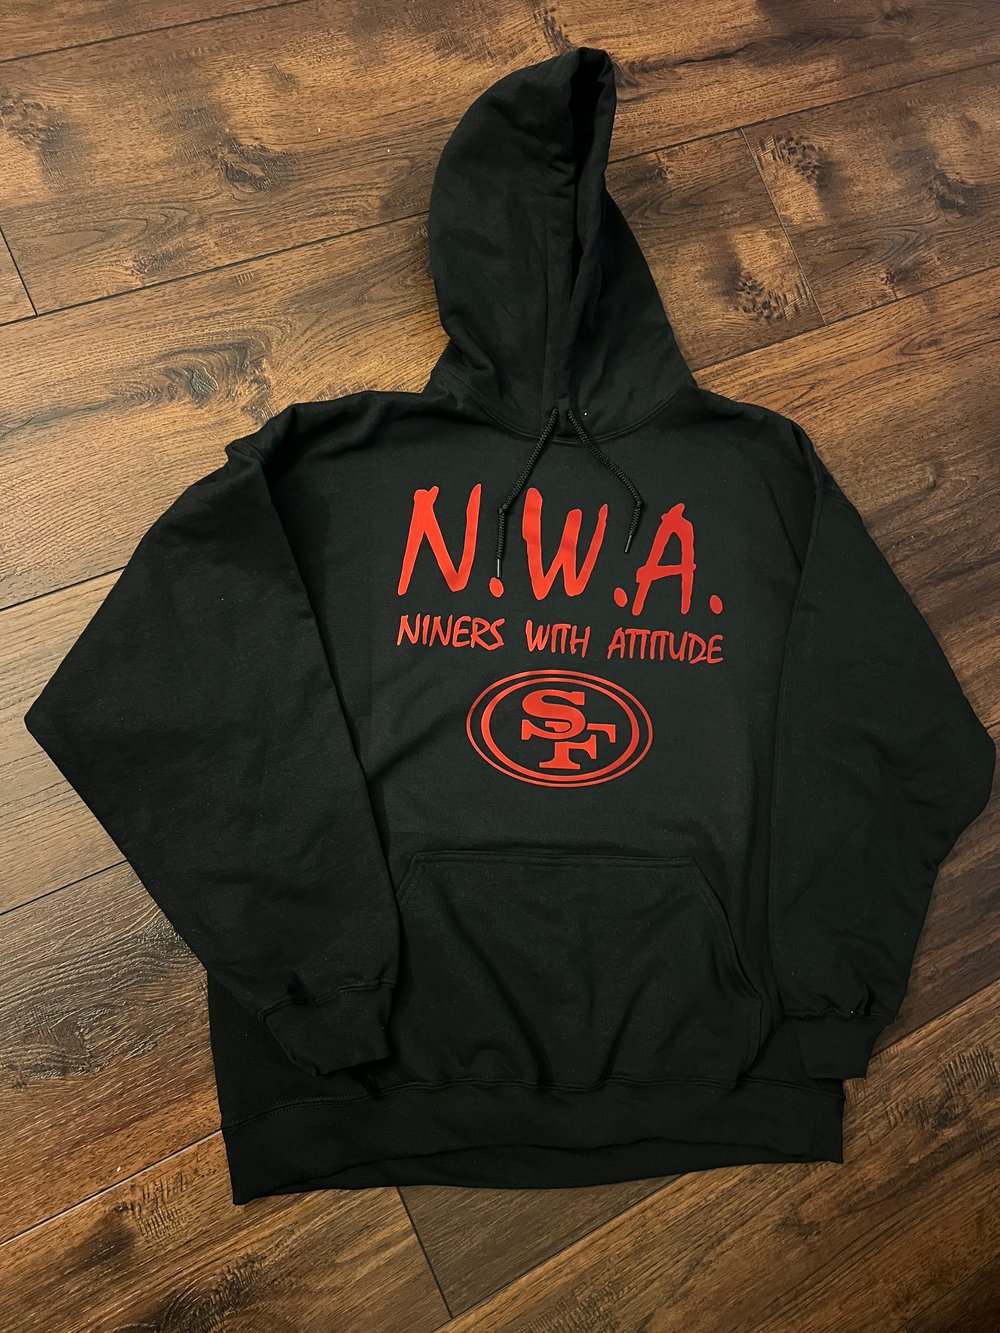 N.W.A. BLACK HOODIE, METALLIC RED LETTERS 